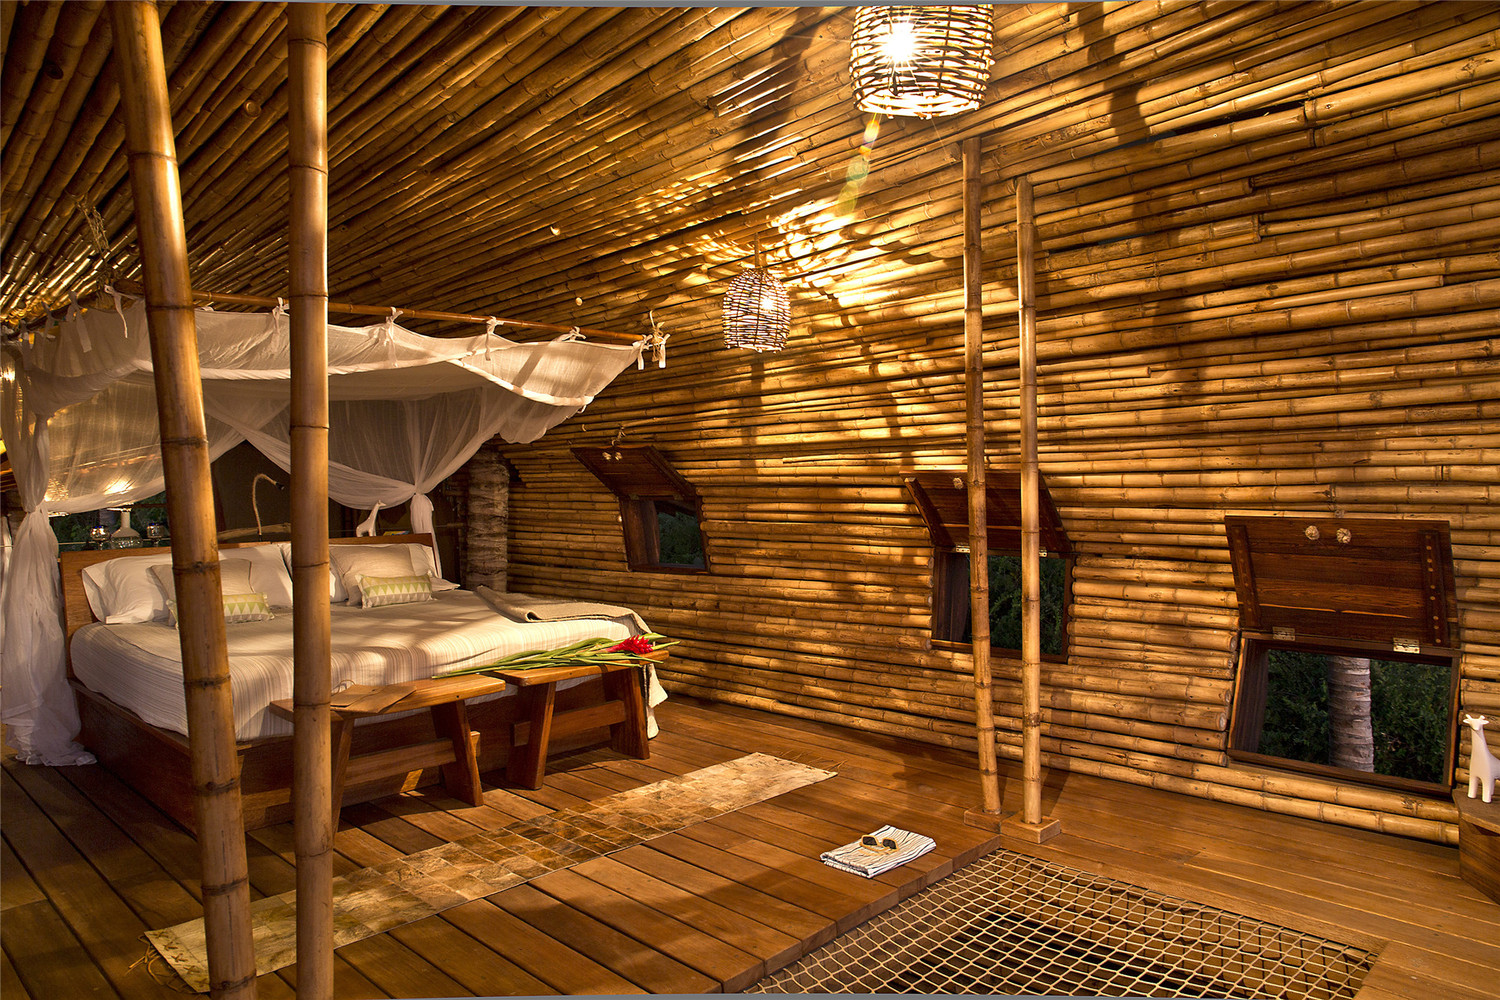 Великолепна бамбукова къща, заобиколена от палми